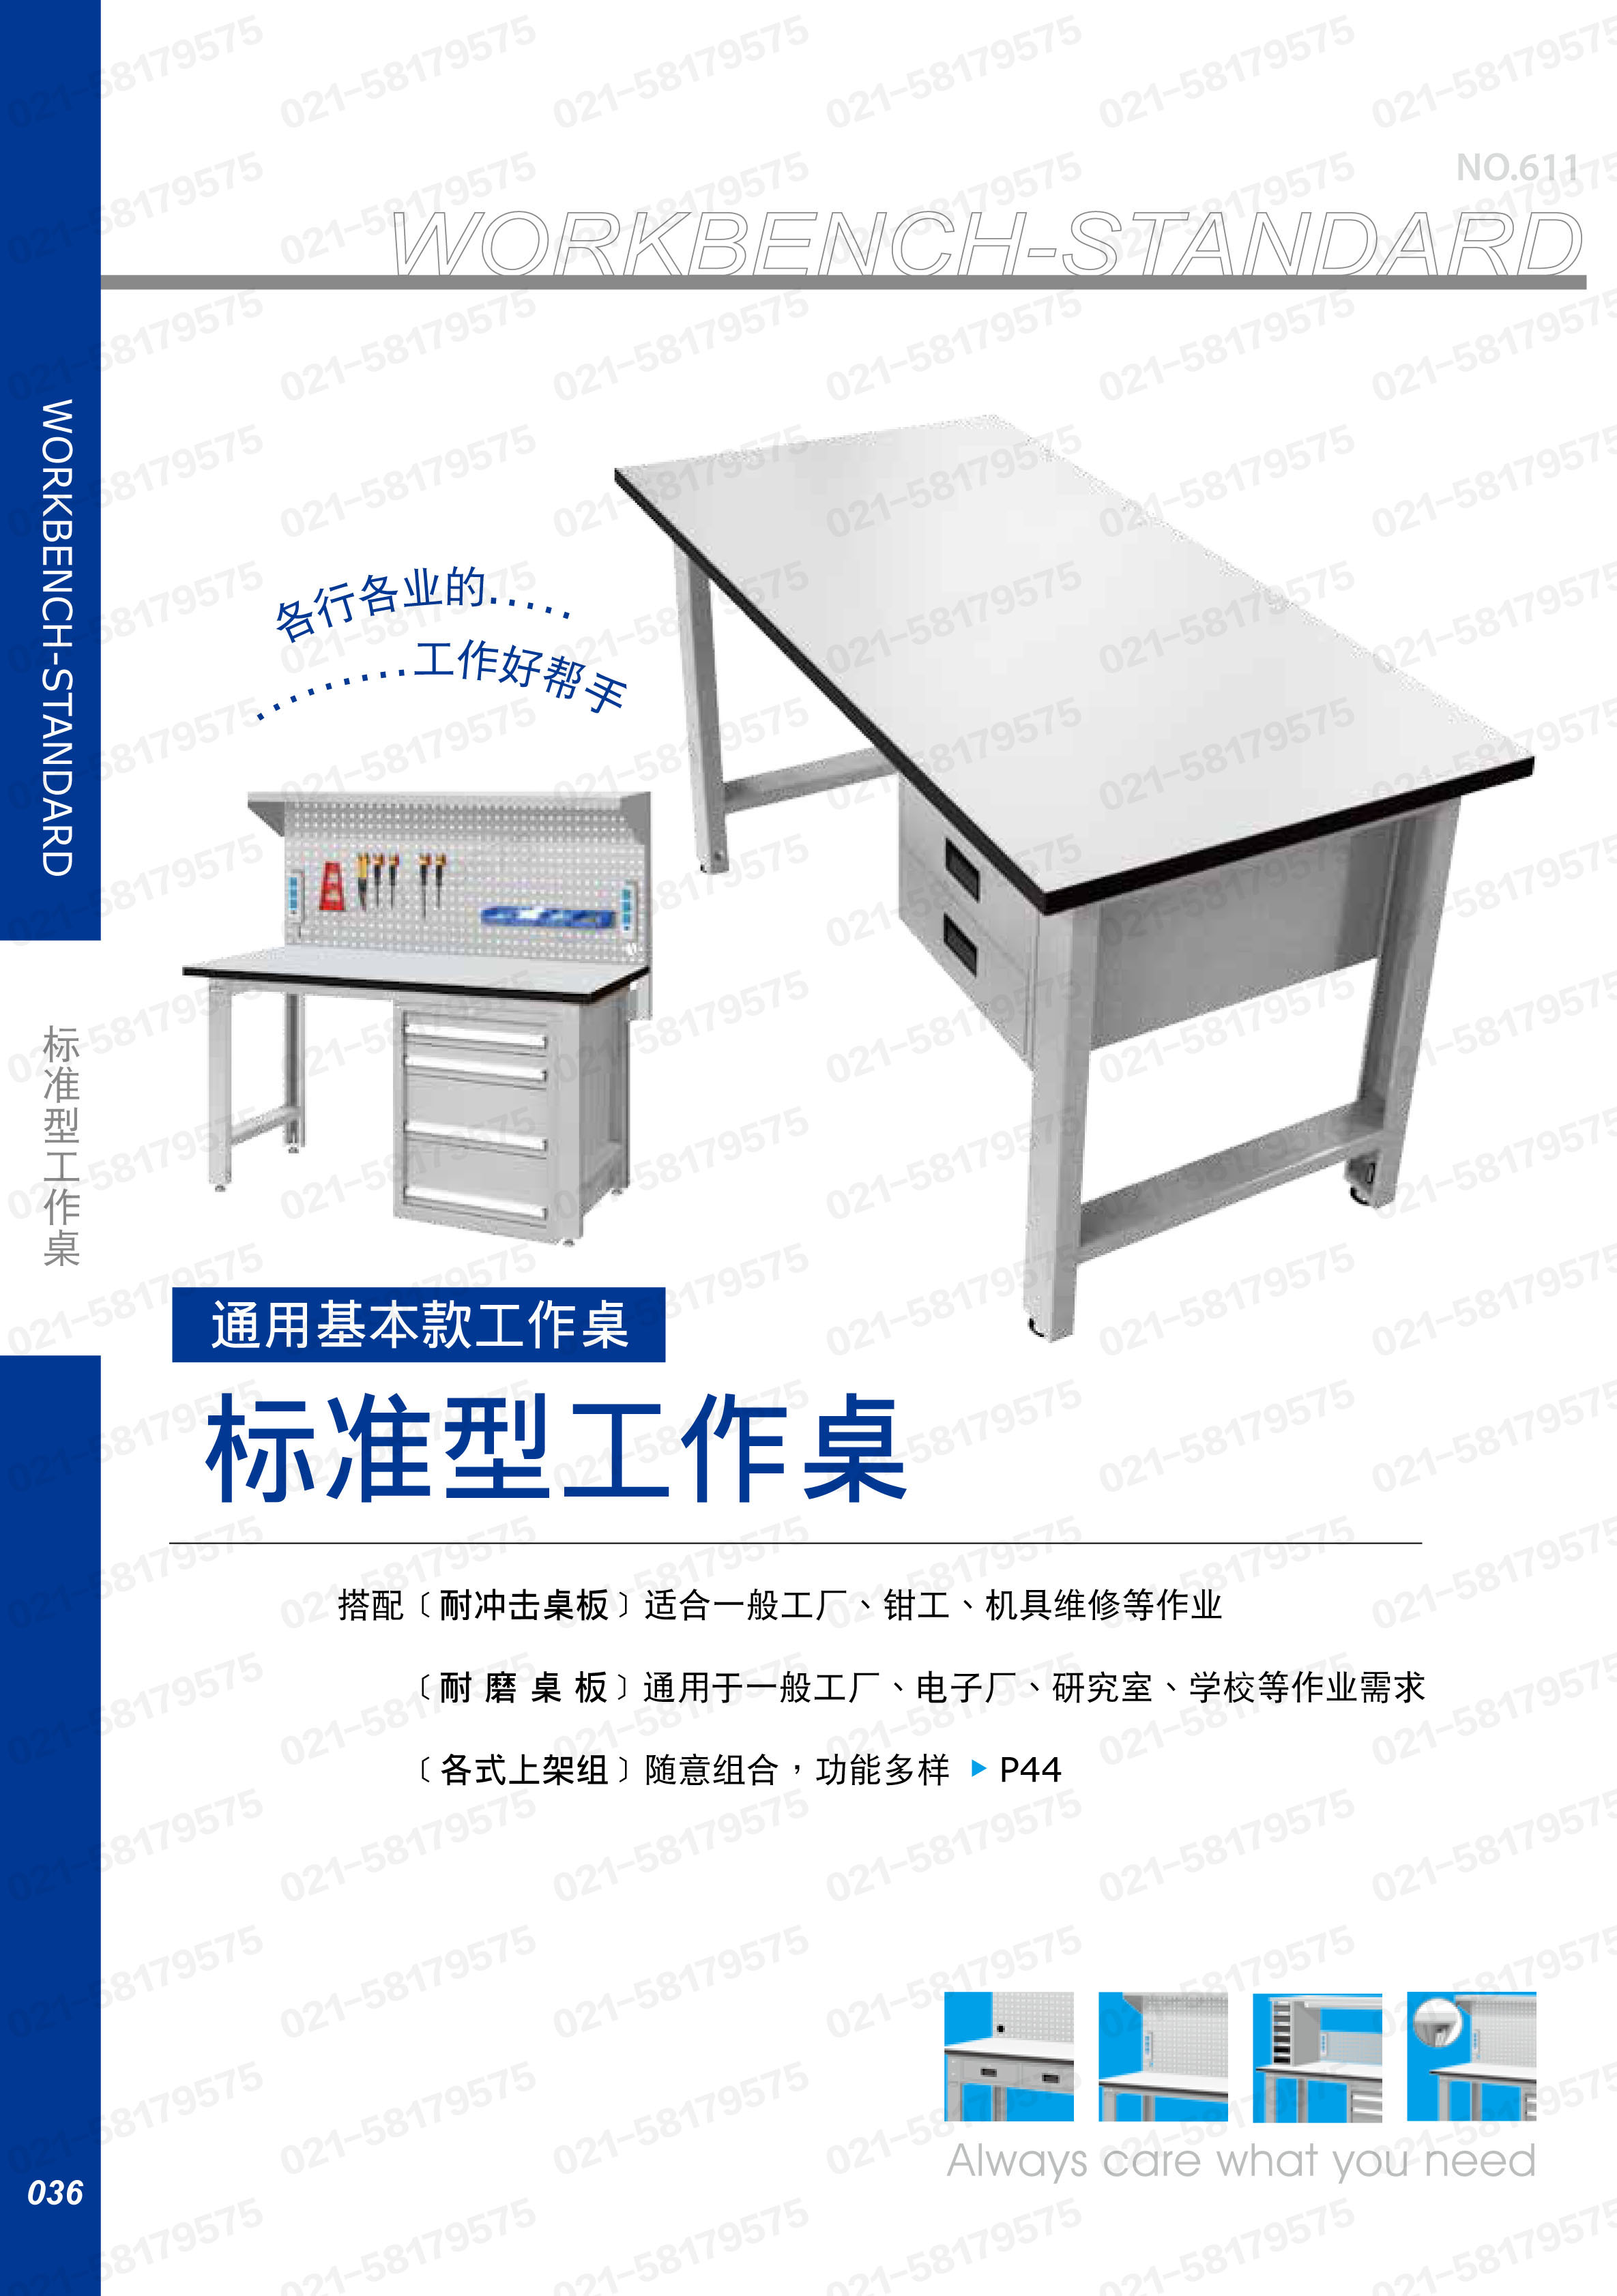 轻型工作桌1500×750×800mm 耐冲击桌板,WB-57N,5D2928